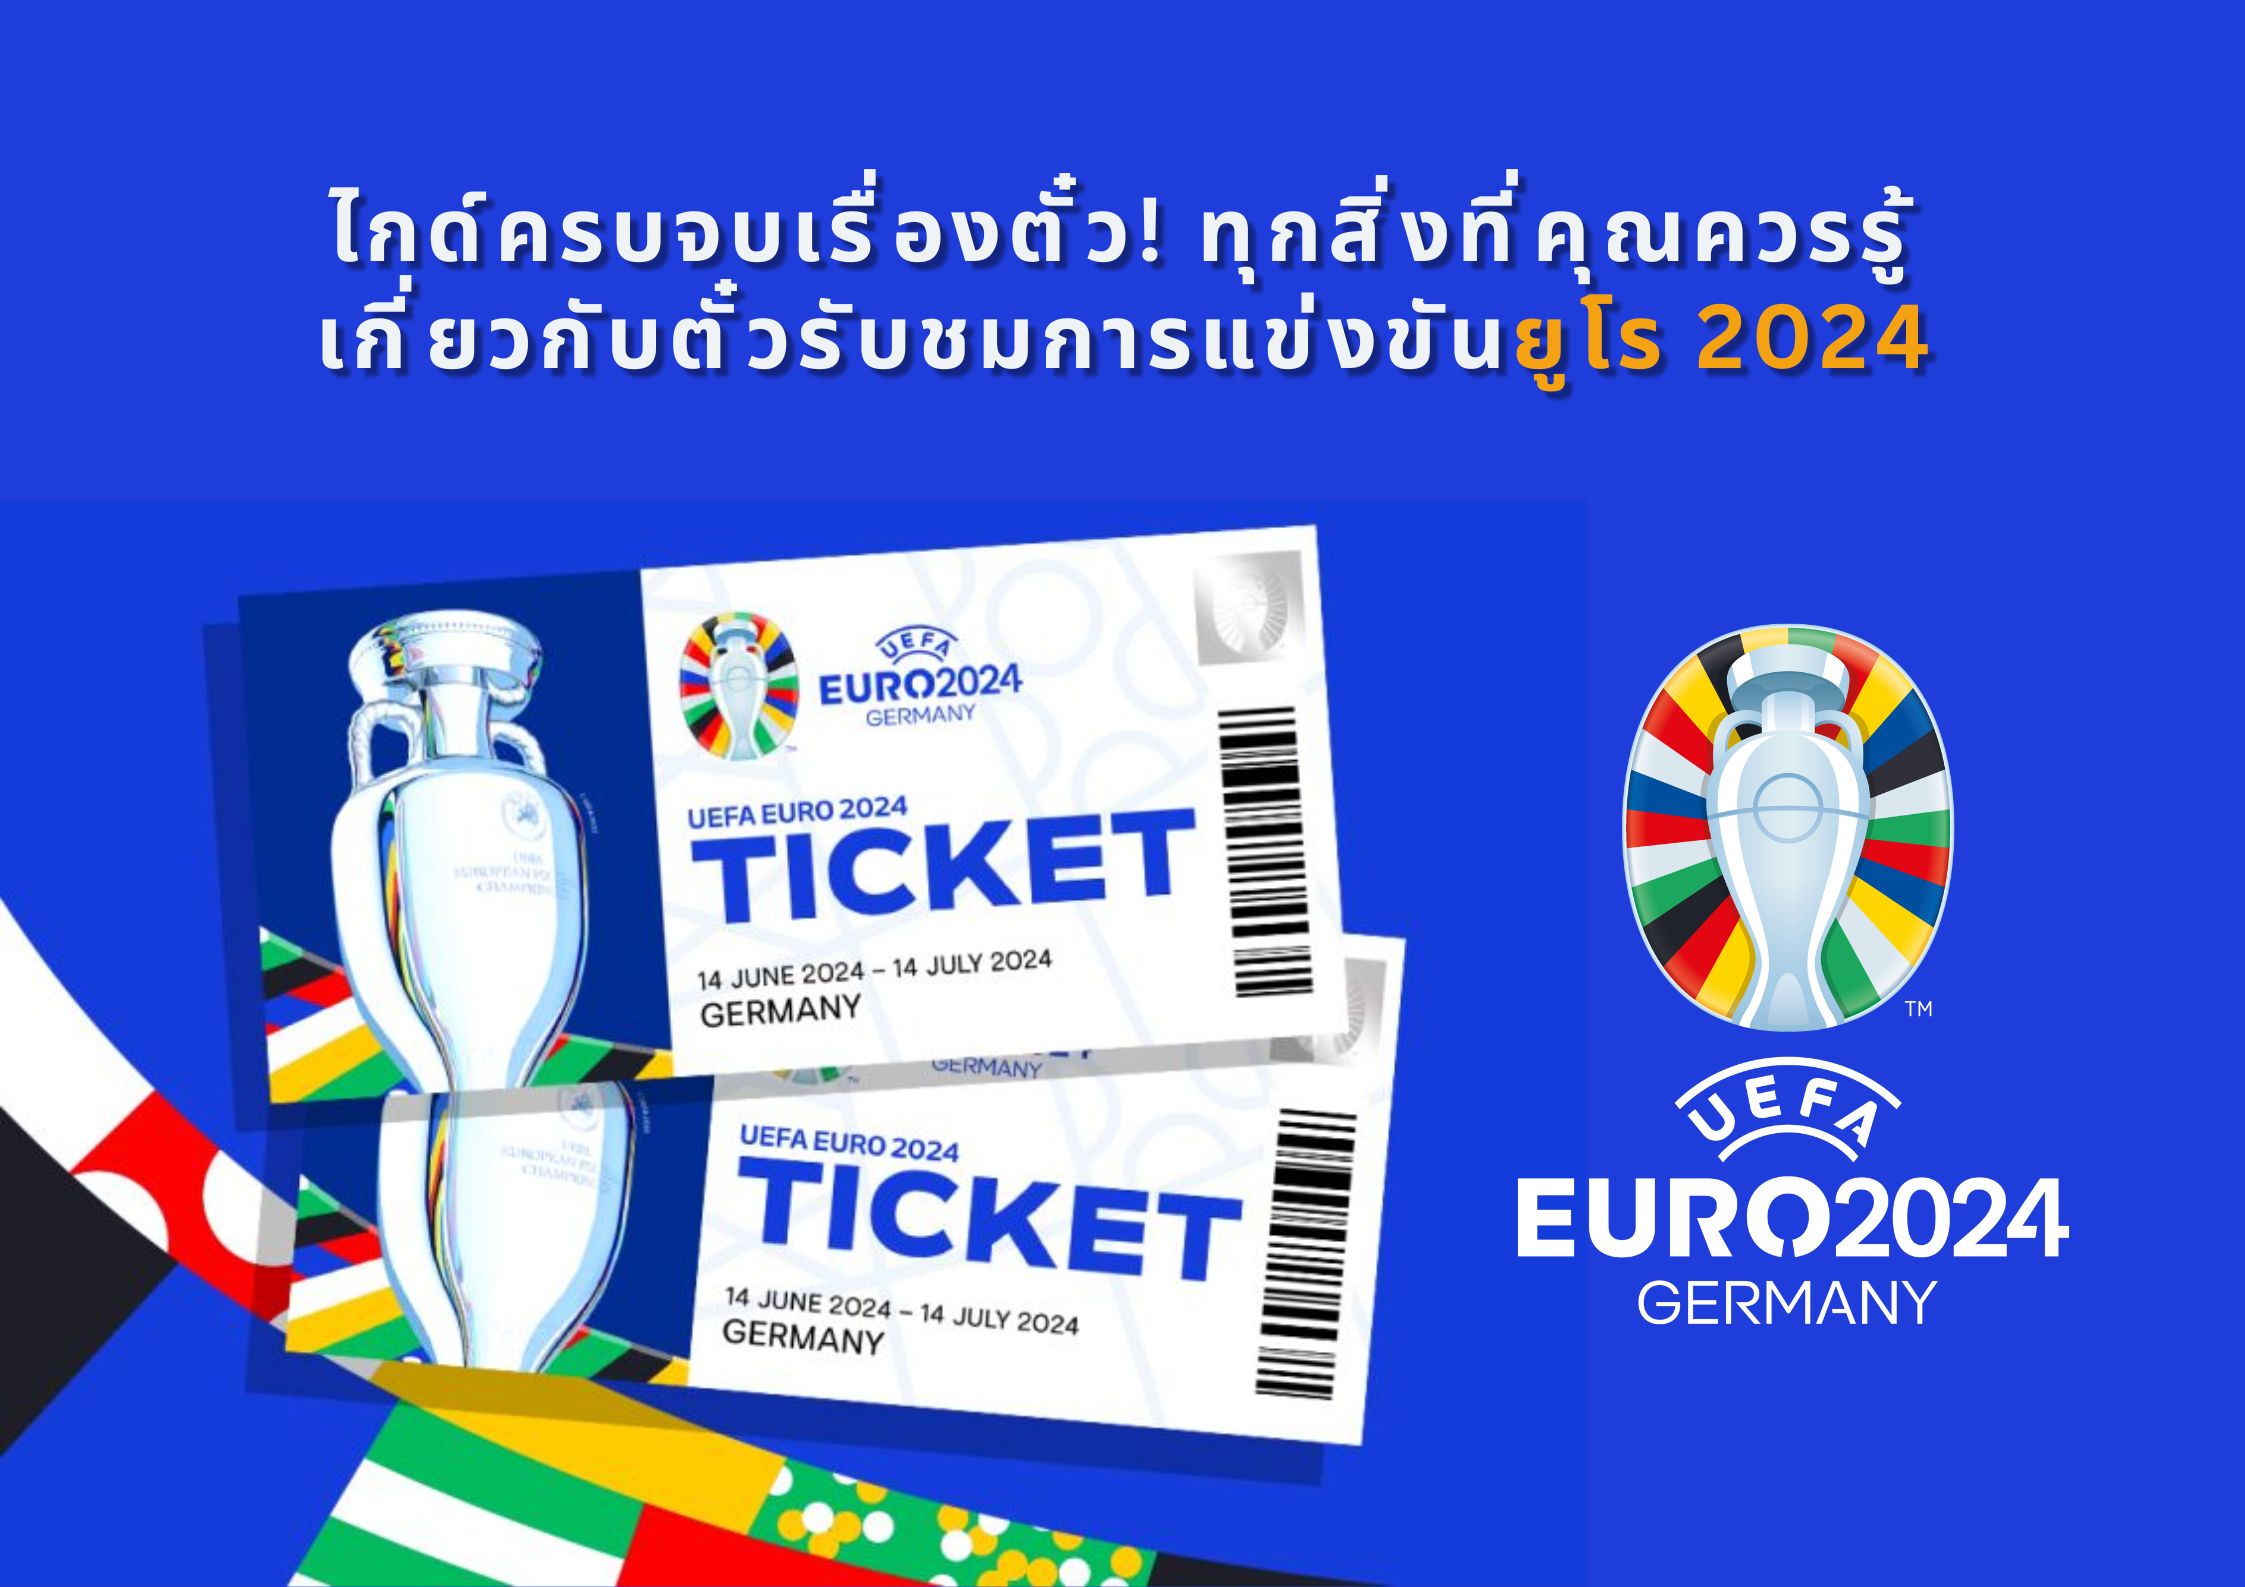 ยูโร 2024: ไกด์ครบจบเรื่องตั๋ว! ทุกสิ่งที่คุณควรรู้เกี่ยวกับตั๋วรับชมการแข่งขันฟุตบอลยูโร 2024